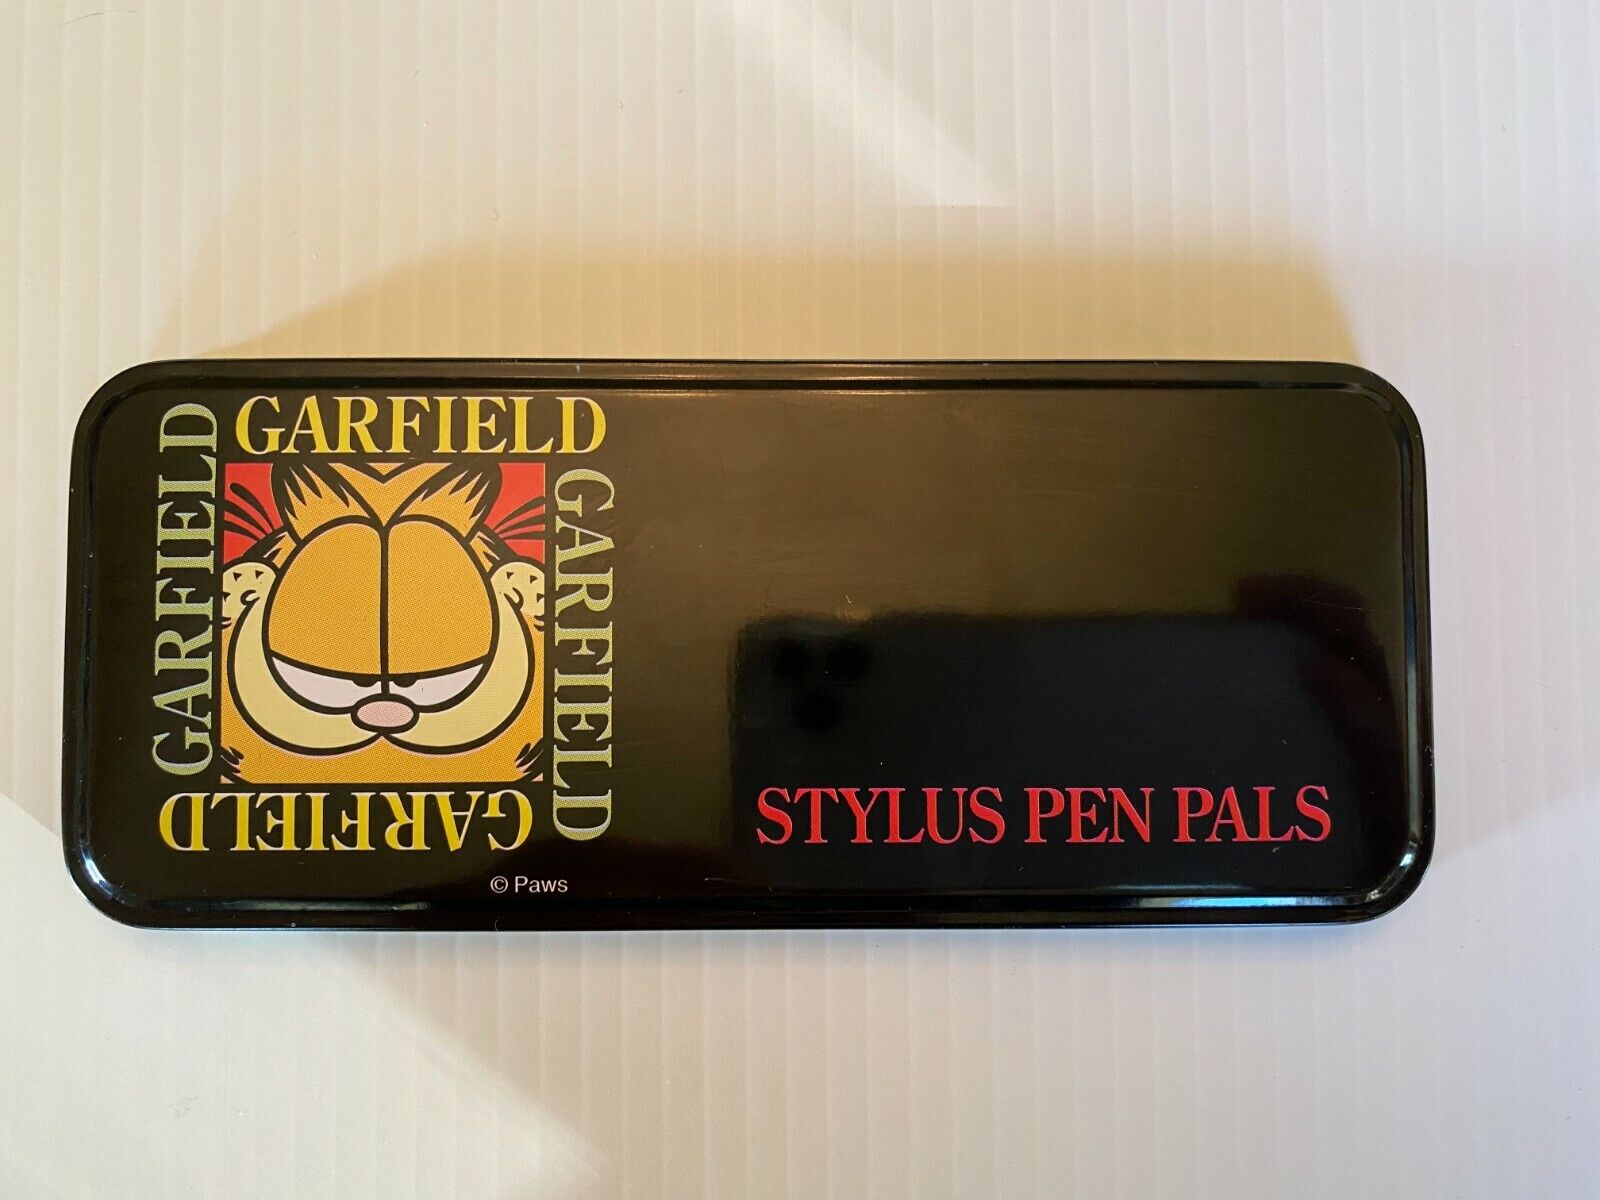 Rare Vintage Paws Garfield Stylus Pen Pals Black Lacquer Gold Pen Jim Davis 